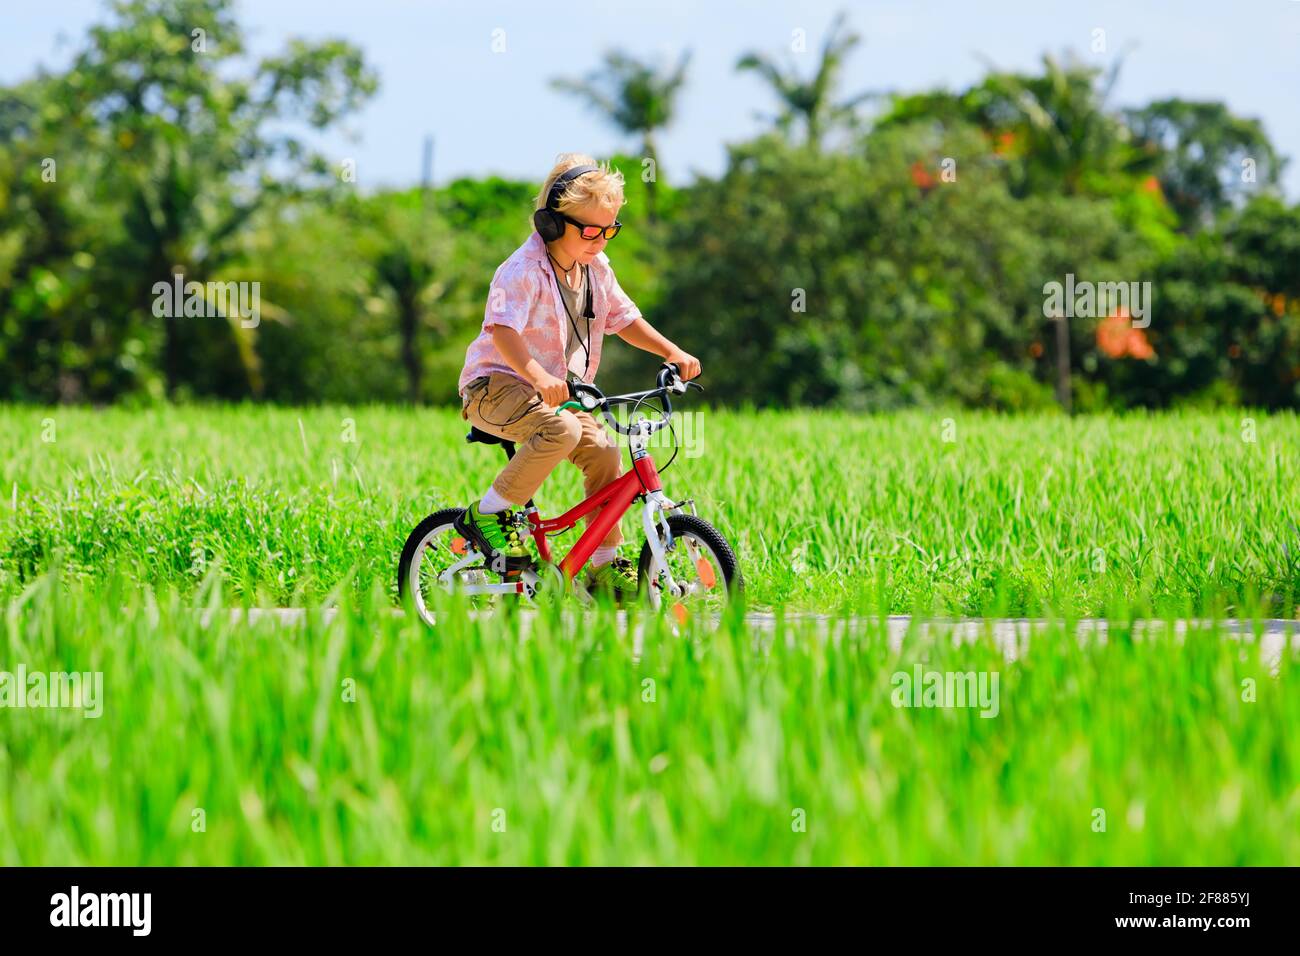 Randonnée à vélo. Jeune enfant pilote dans un casque et des lunettes de soleil à vélo. Un enfant heureux s'amuse sur le sentier. Mode de vie familial actif, sport Banque D'Images